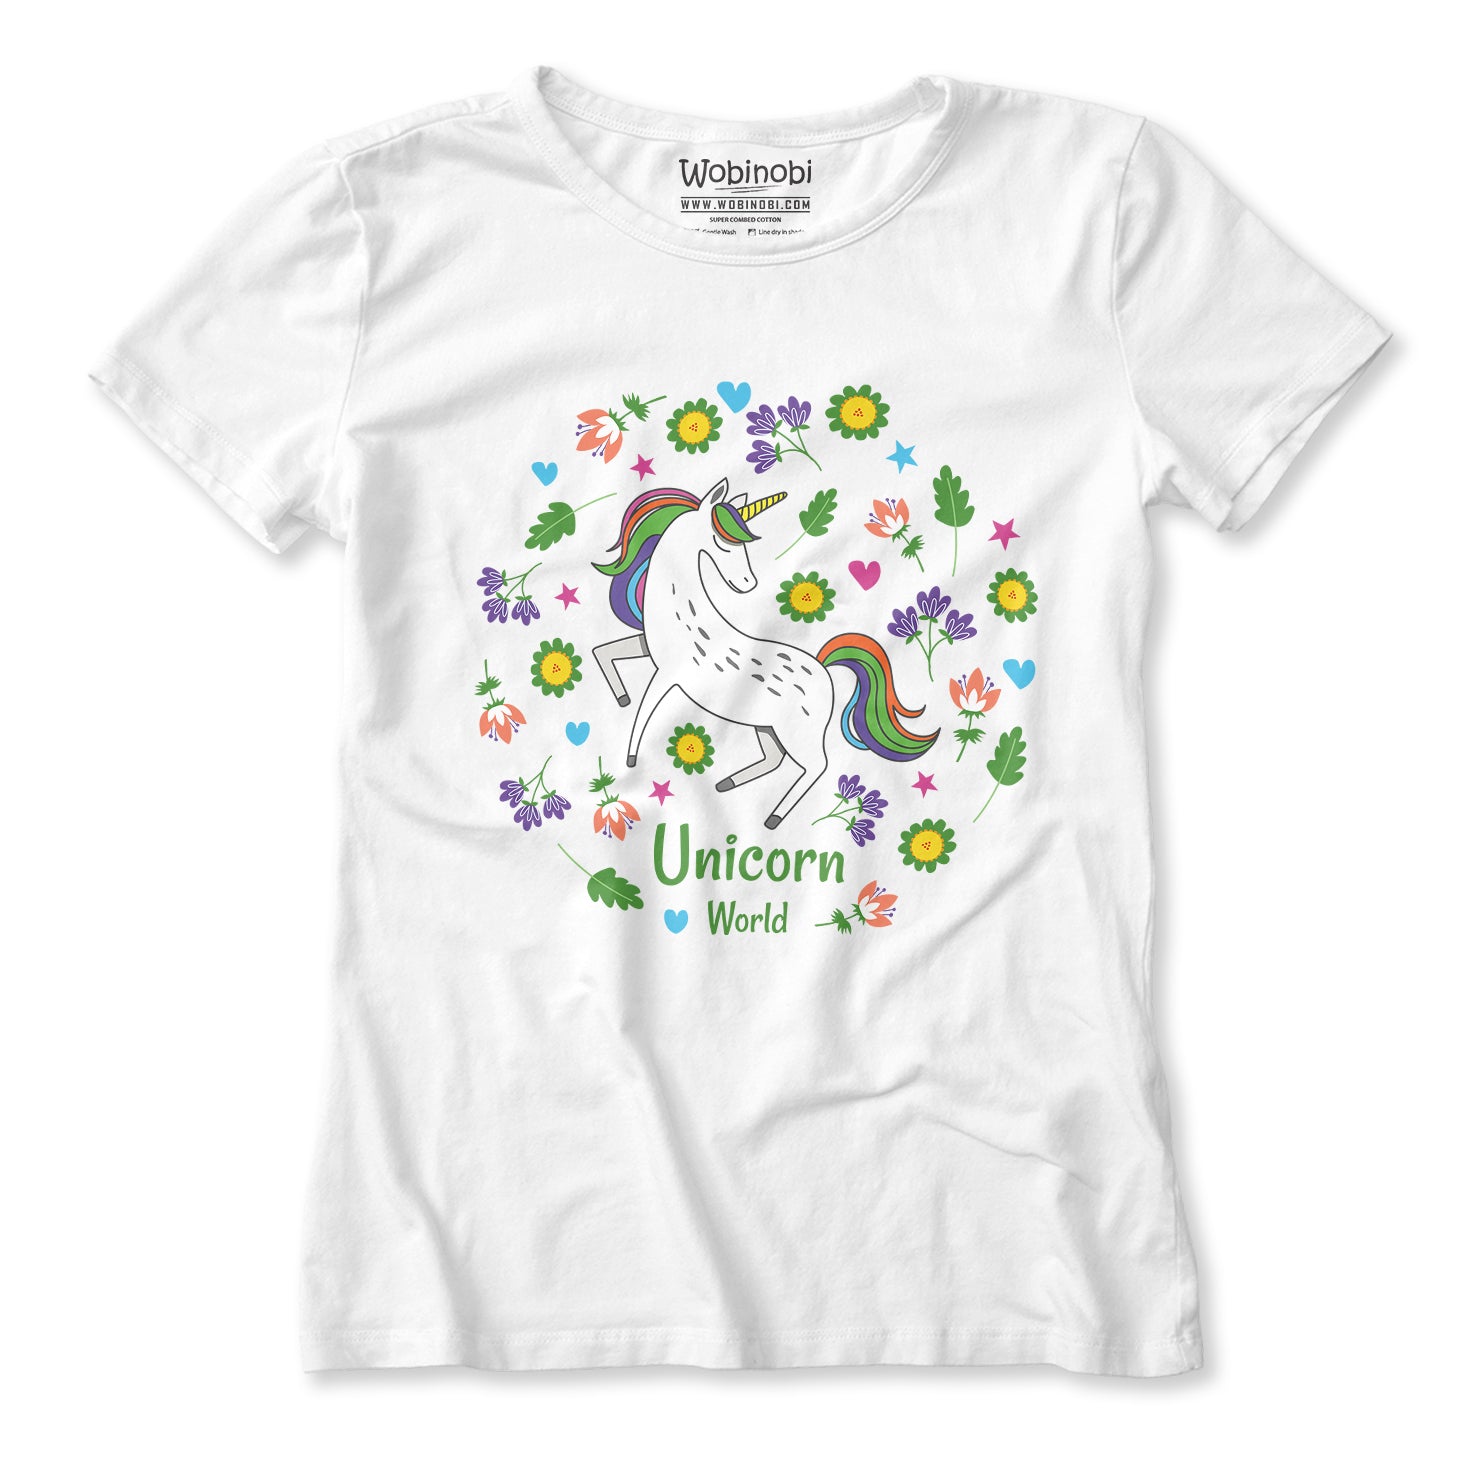 100% – Unicorn Cotton Girls T-Shirt World Wobinobi